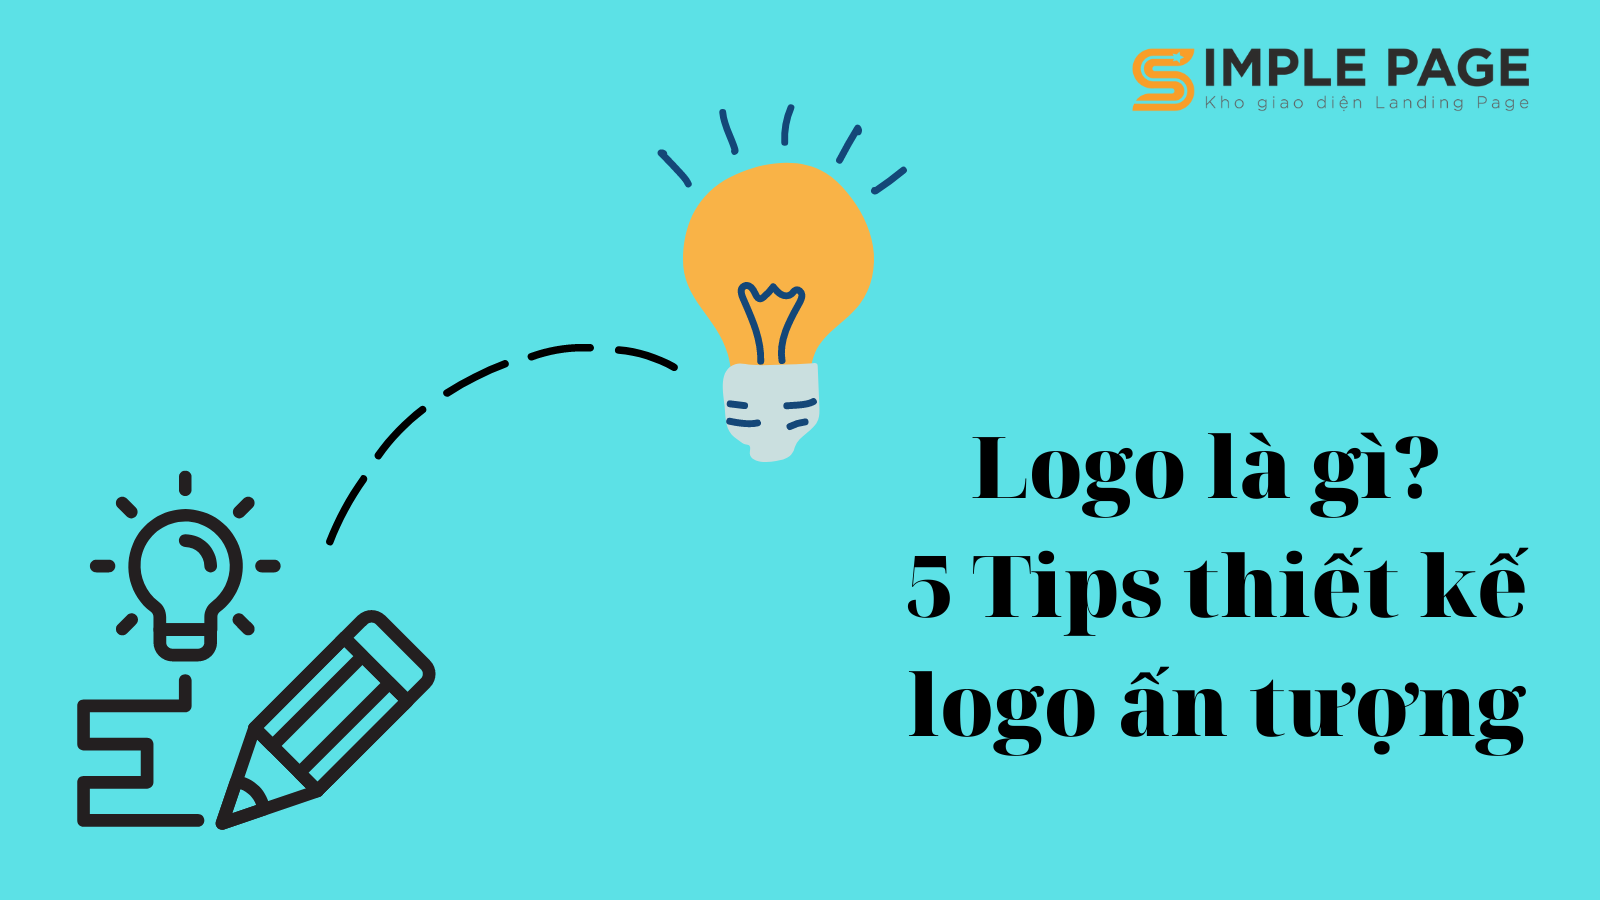 Logo là gì? 5 tips thiết kế logo ấn tượng - Simple Page